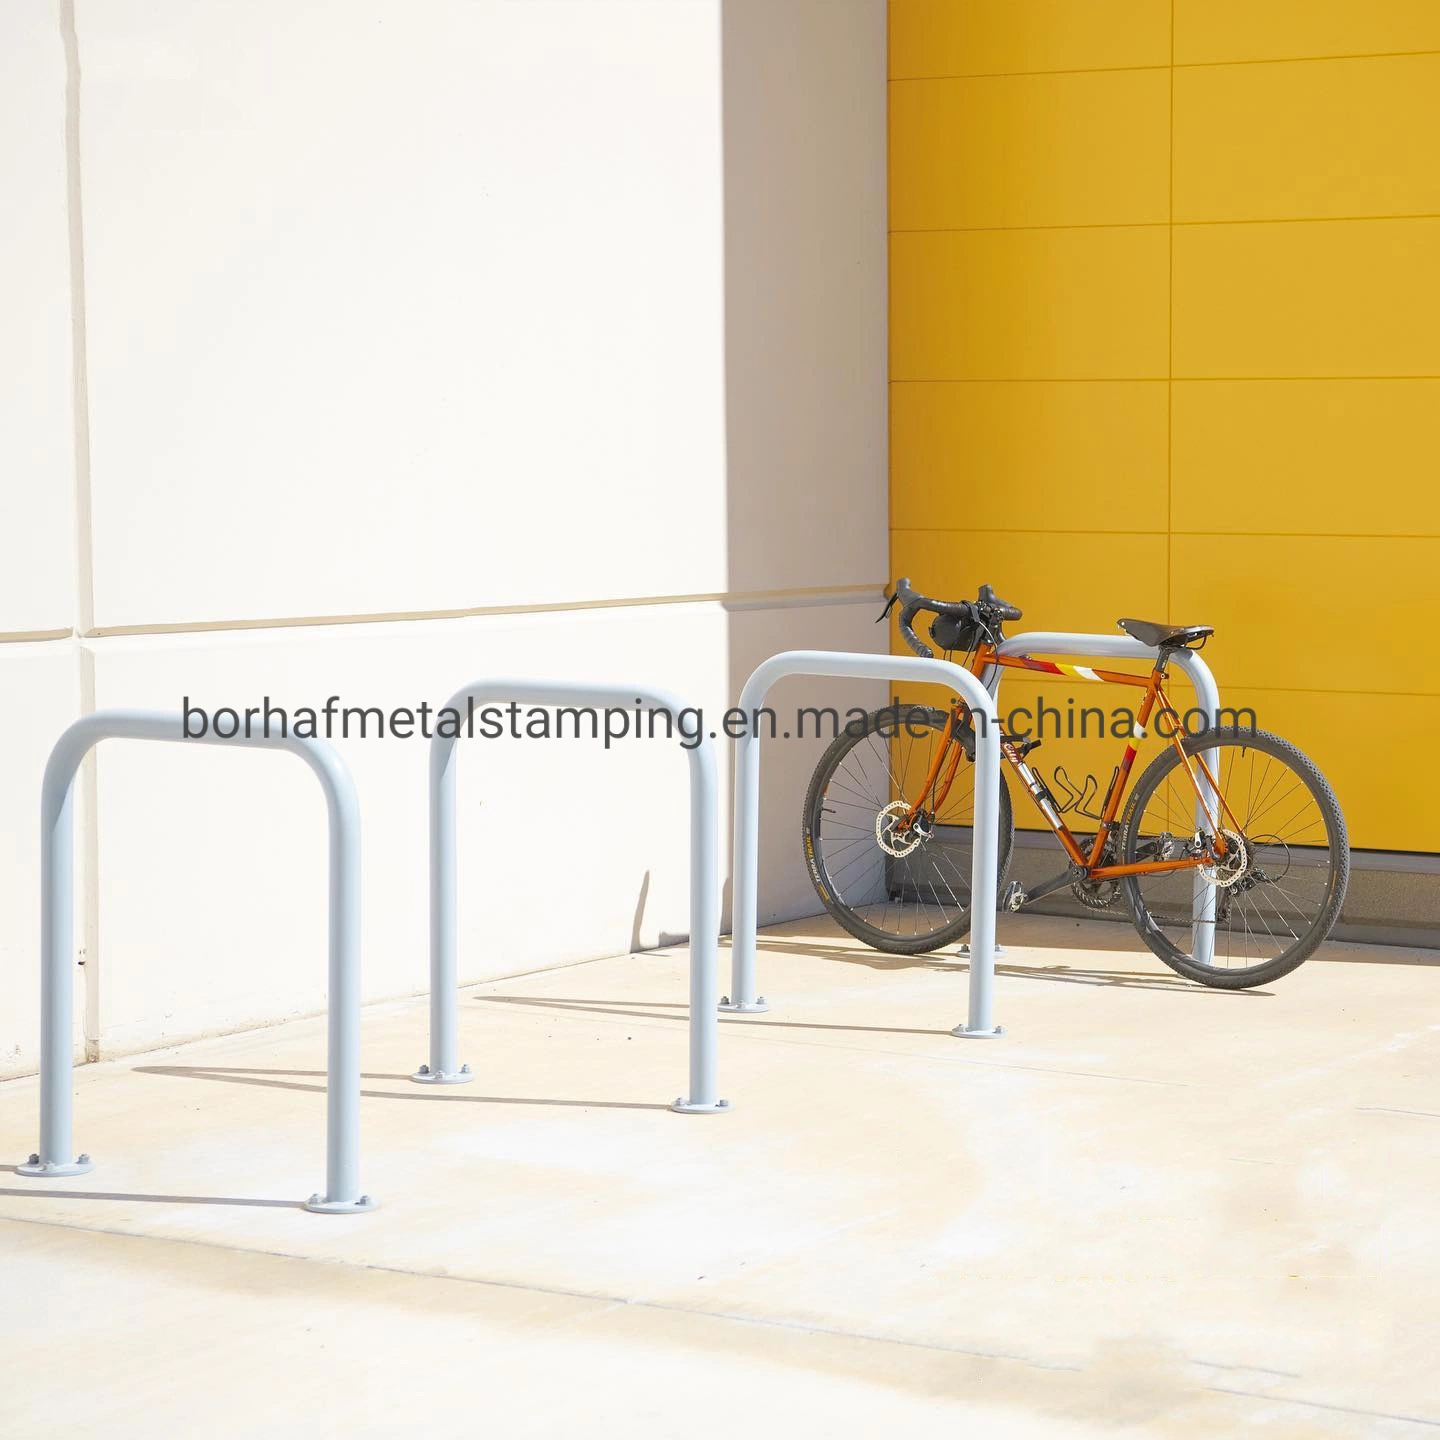 Chinesische Fabrik Metall Laser Schneiden Teile Fahrrad Lagerung Rack Schwarz Power Coated Finish U-Form Wand Fahrrad-Rack montiert Regale Lagerungslösung für Fahrräder